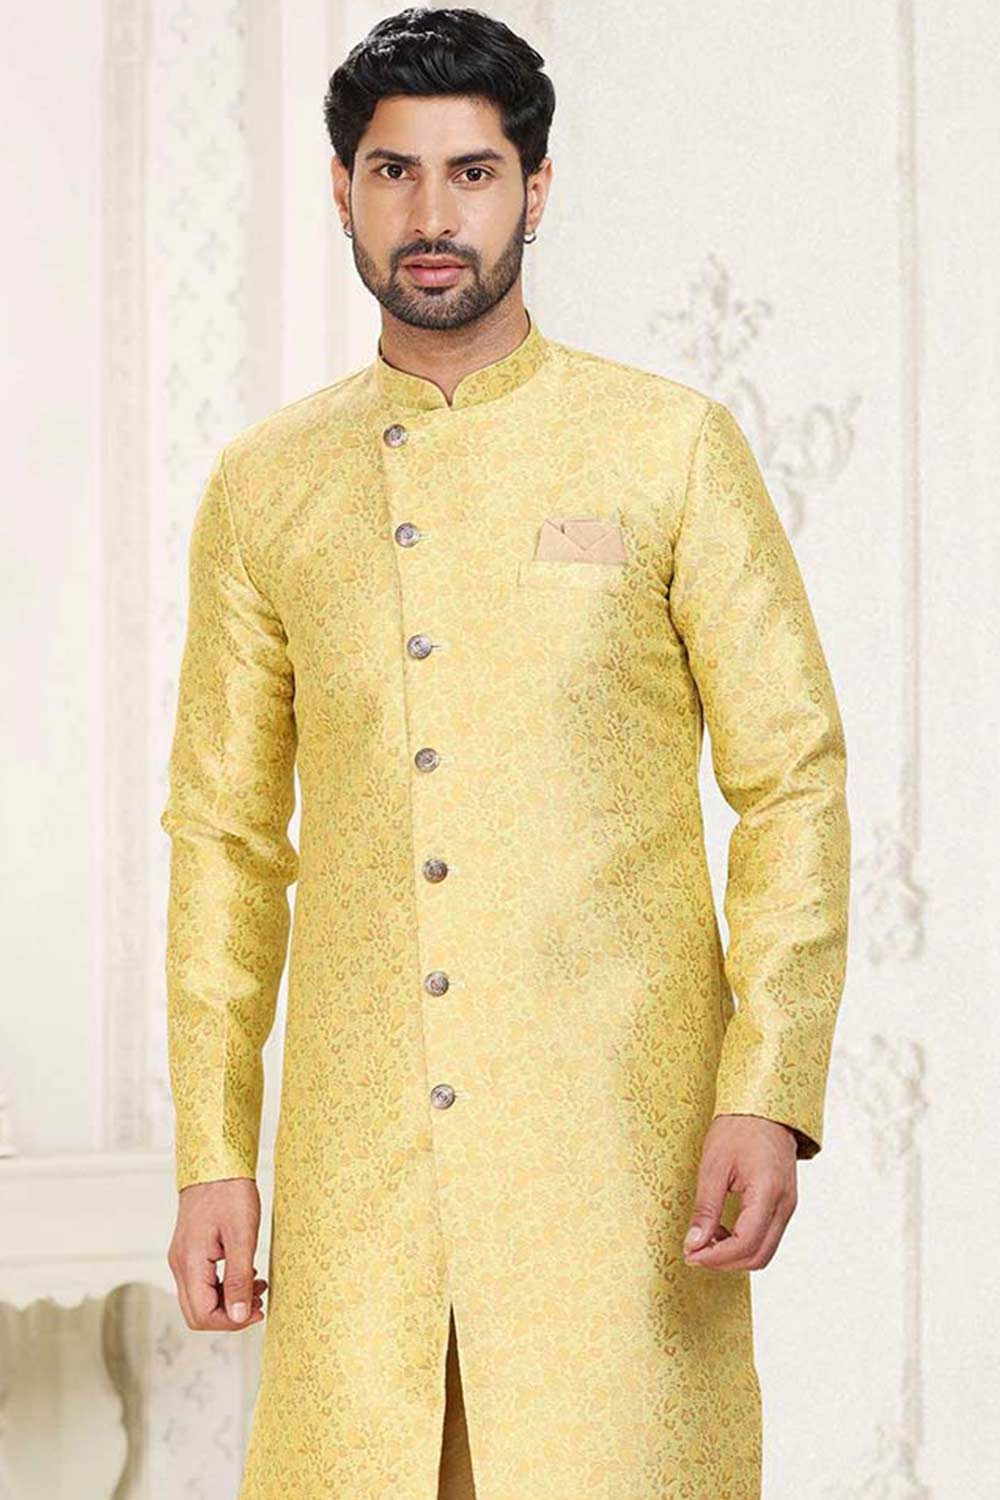 Buy Men's Musturd Yellow Art Silk Banarasi Jacquard Sherwani Set Online - Back